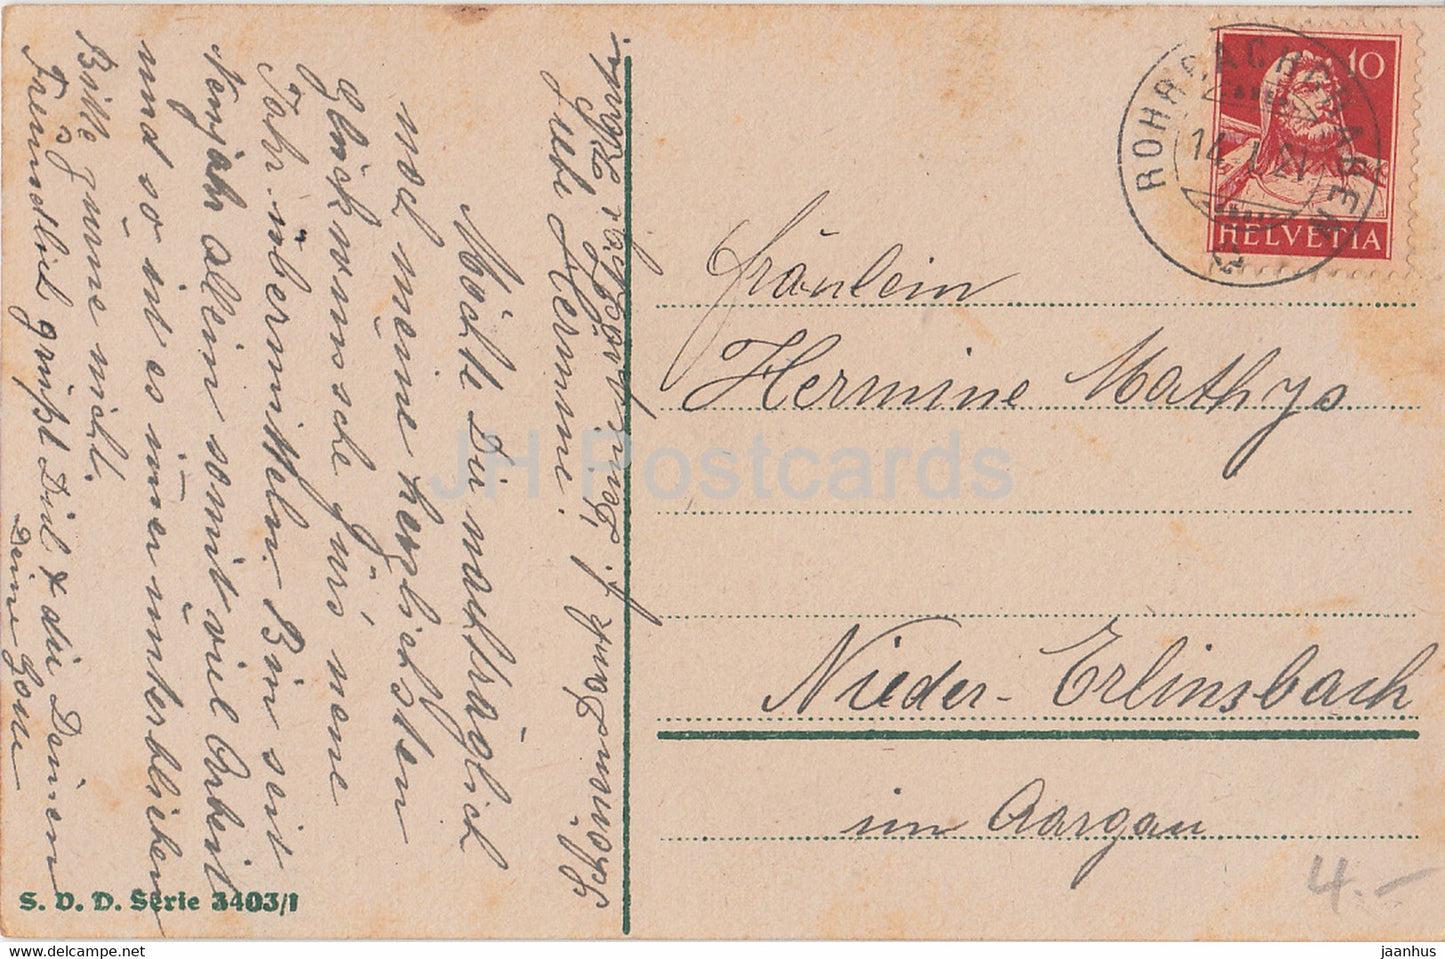 Neujahrsgrußkarte – Ein glückliches Neues Jahr – Stadtansicht – SVD 3403/1 – alte Postkarte – 1921 – Deutschland – gebraucht